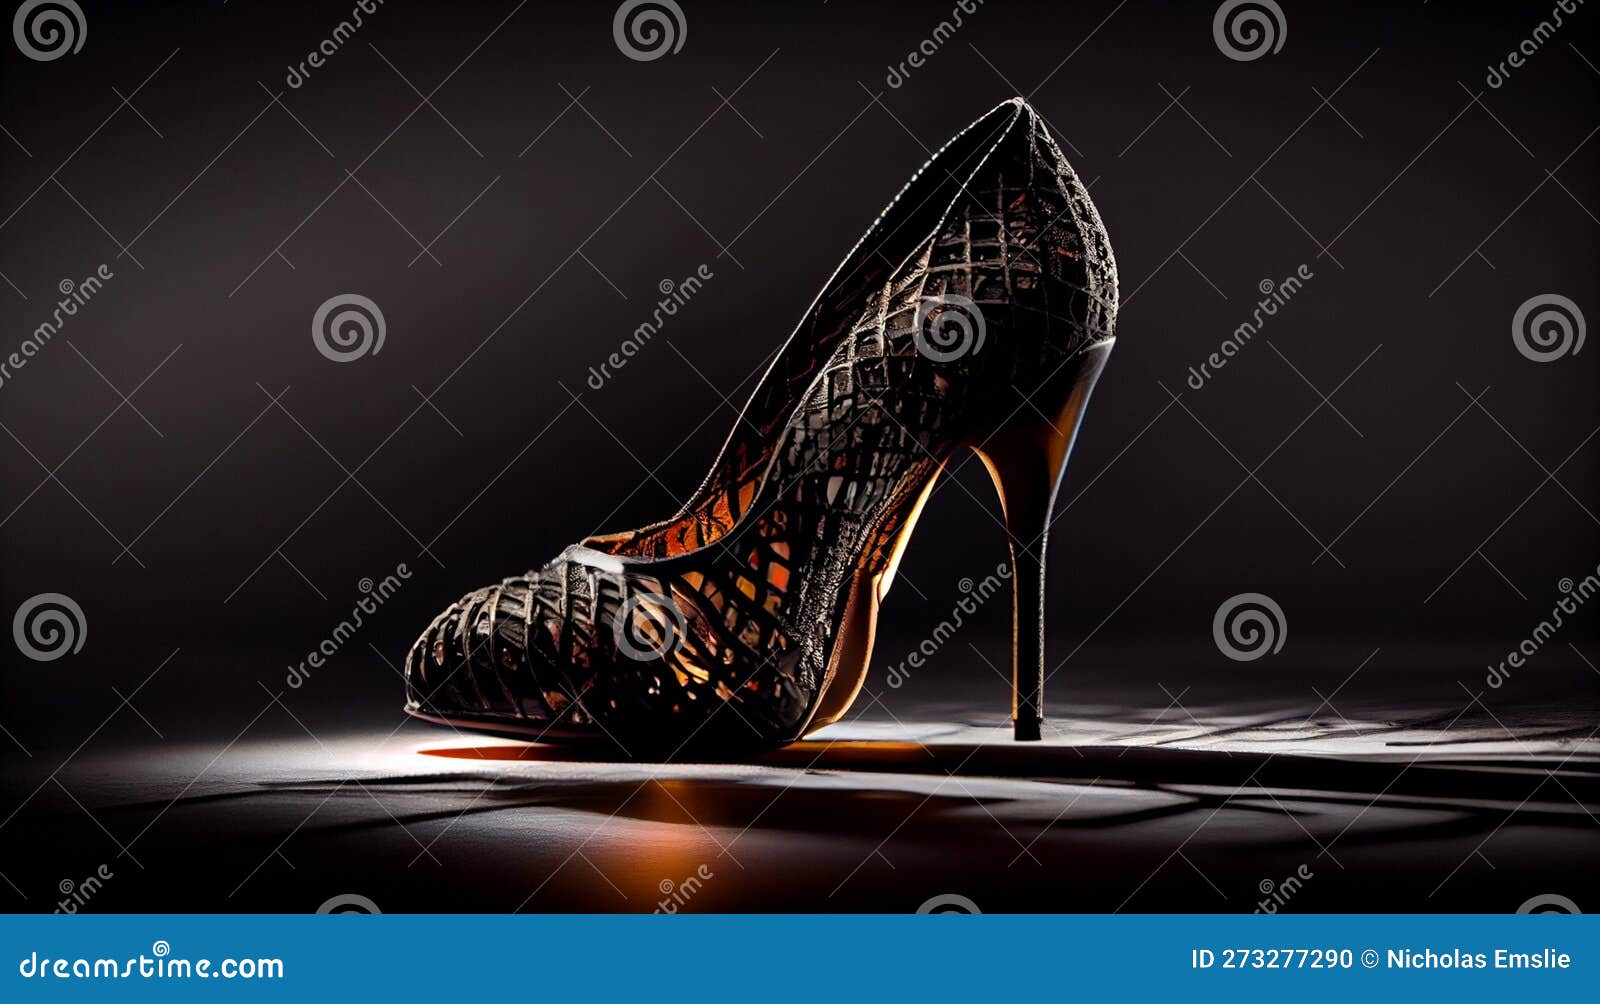 Designer Bridal Shoes and Jewelled Sandals - Aquazzura official